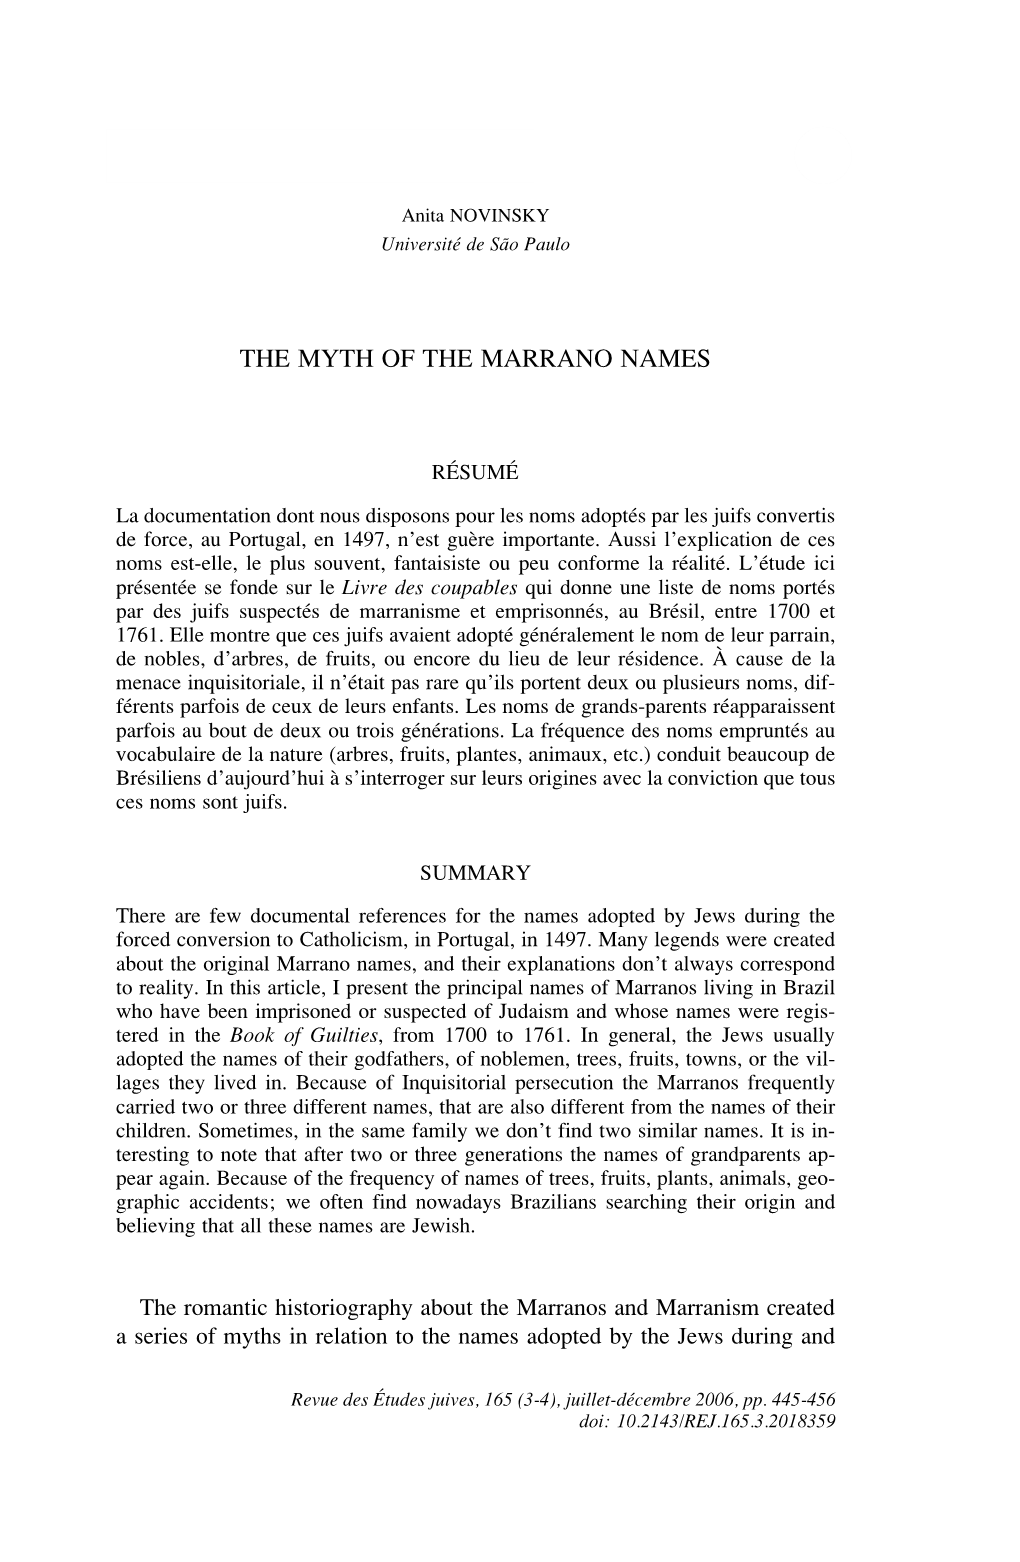 The Myth of the Marrano Names 445